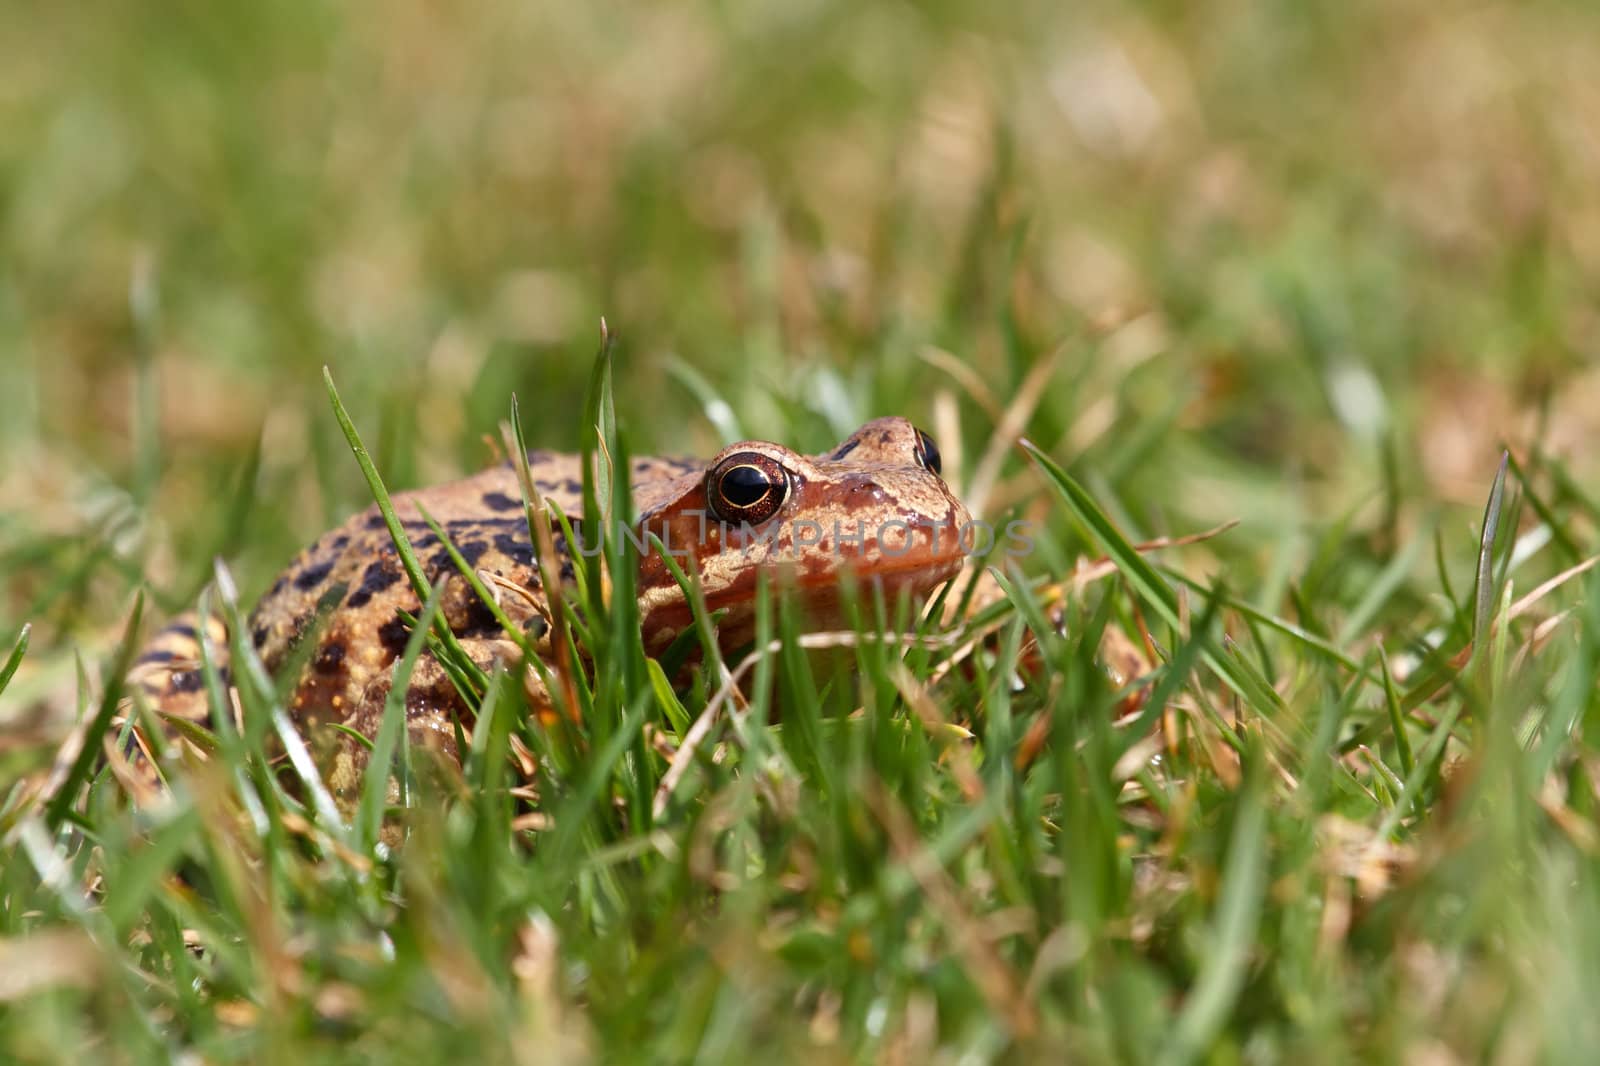 Closeup of brown frog Rana temporaria in garden